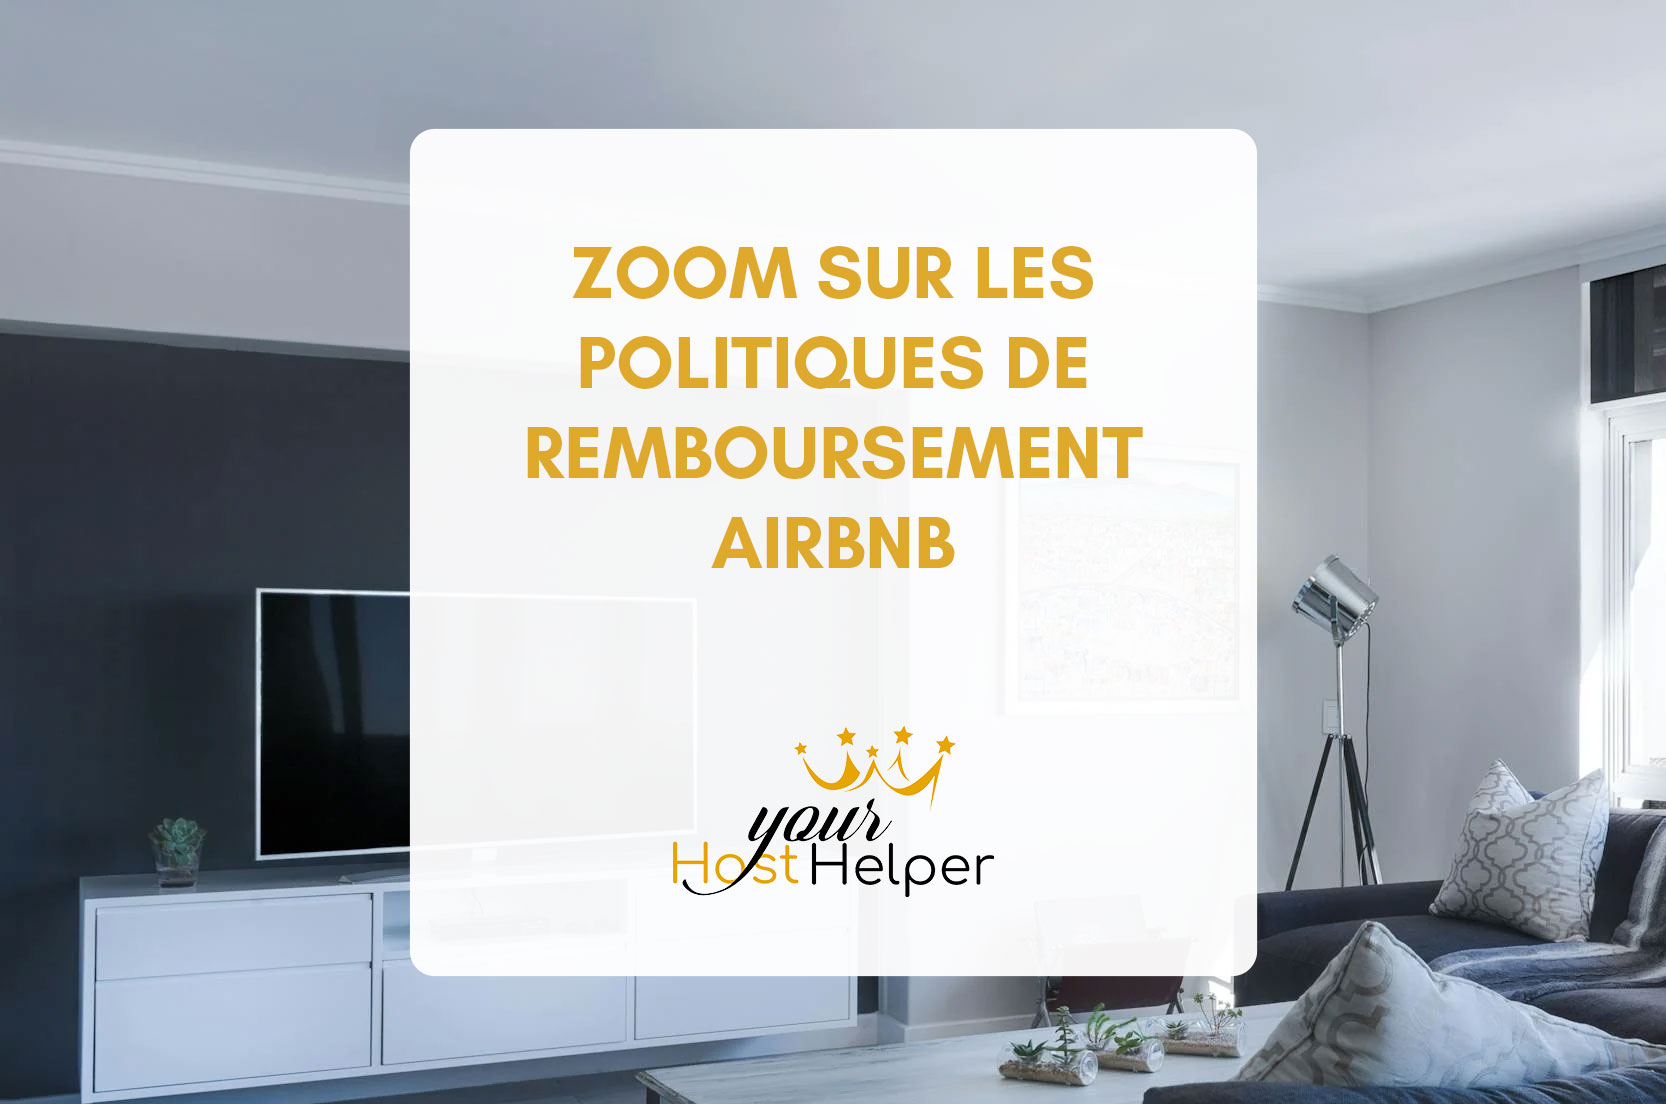 Вы сейчас просматриваете политику возврата средств в Zoom на Airbnb.